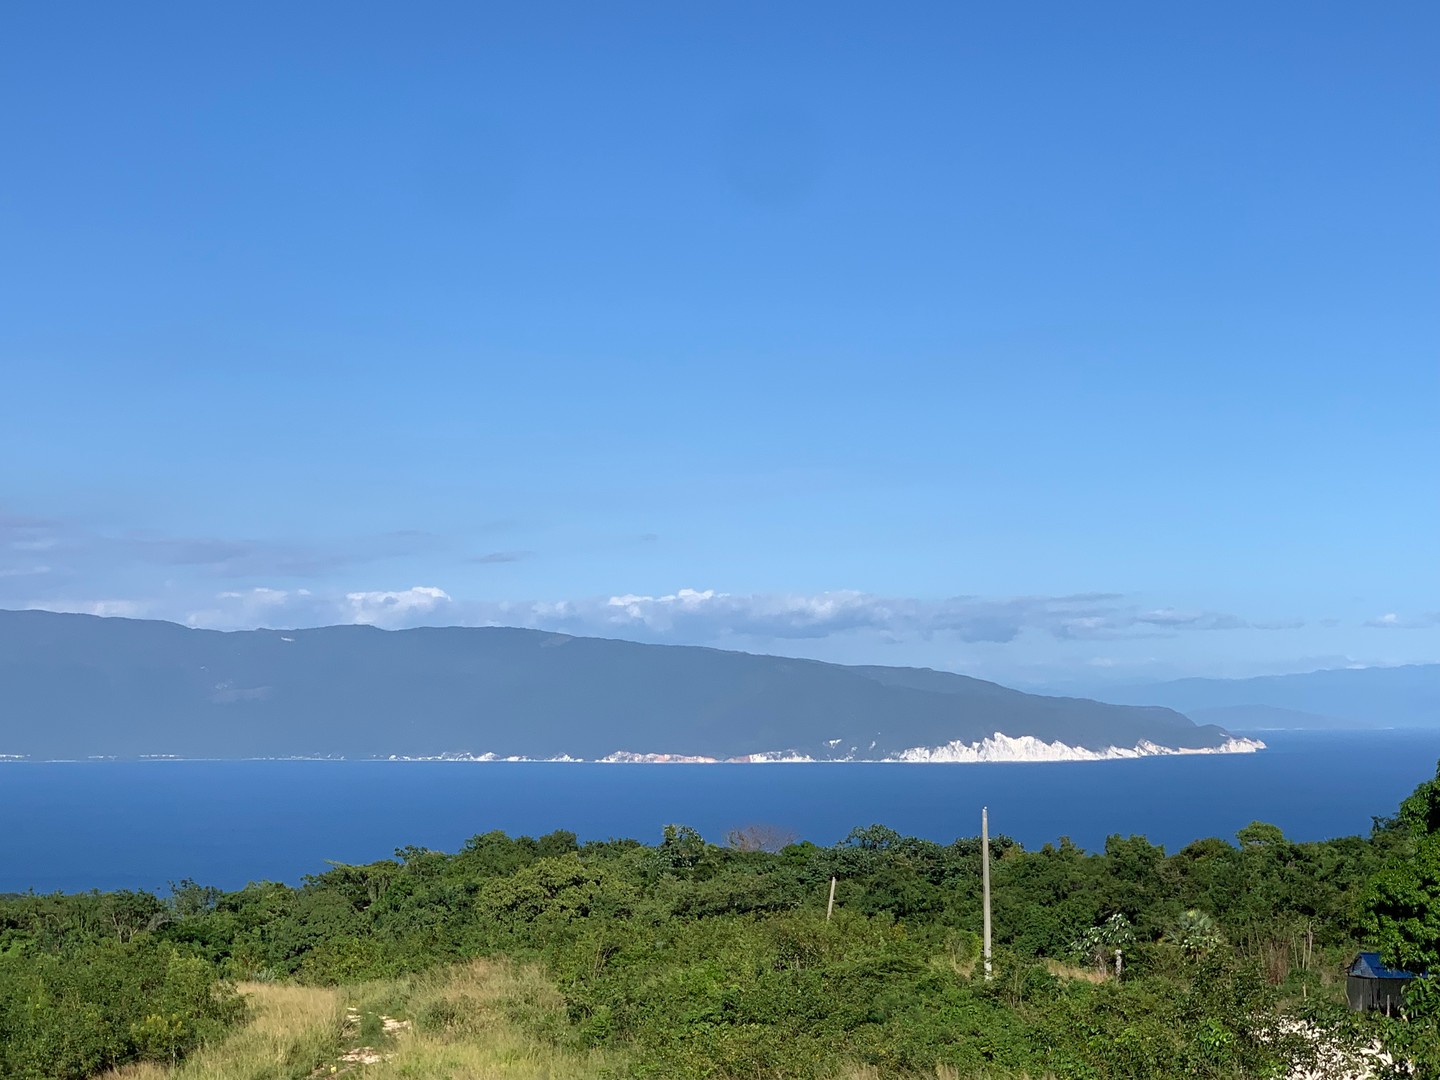 solares y terrenos - Venta de Terrenos en Barahona con hermosas vistas al mar !
 1